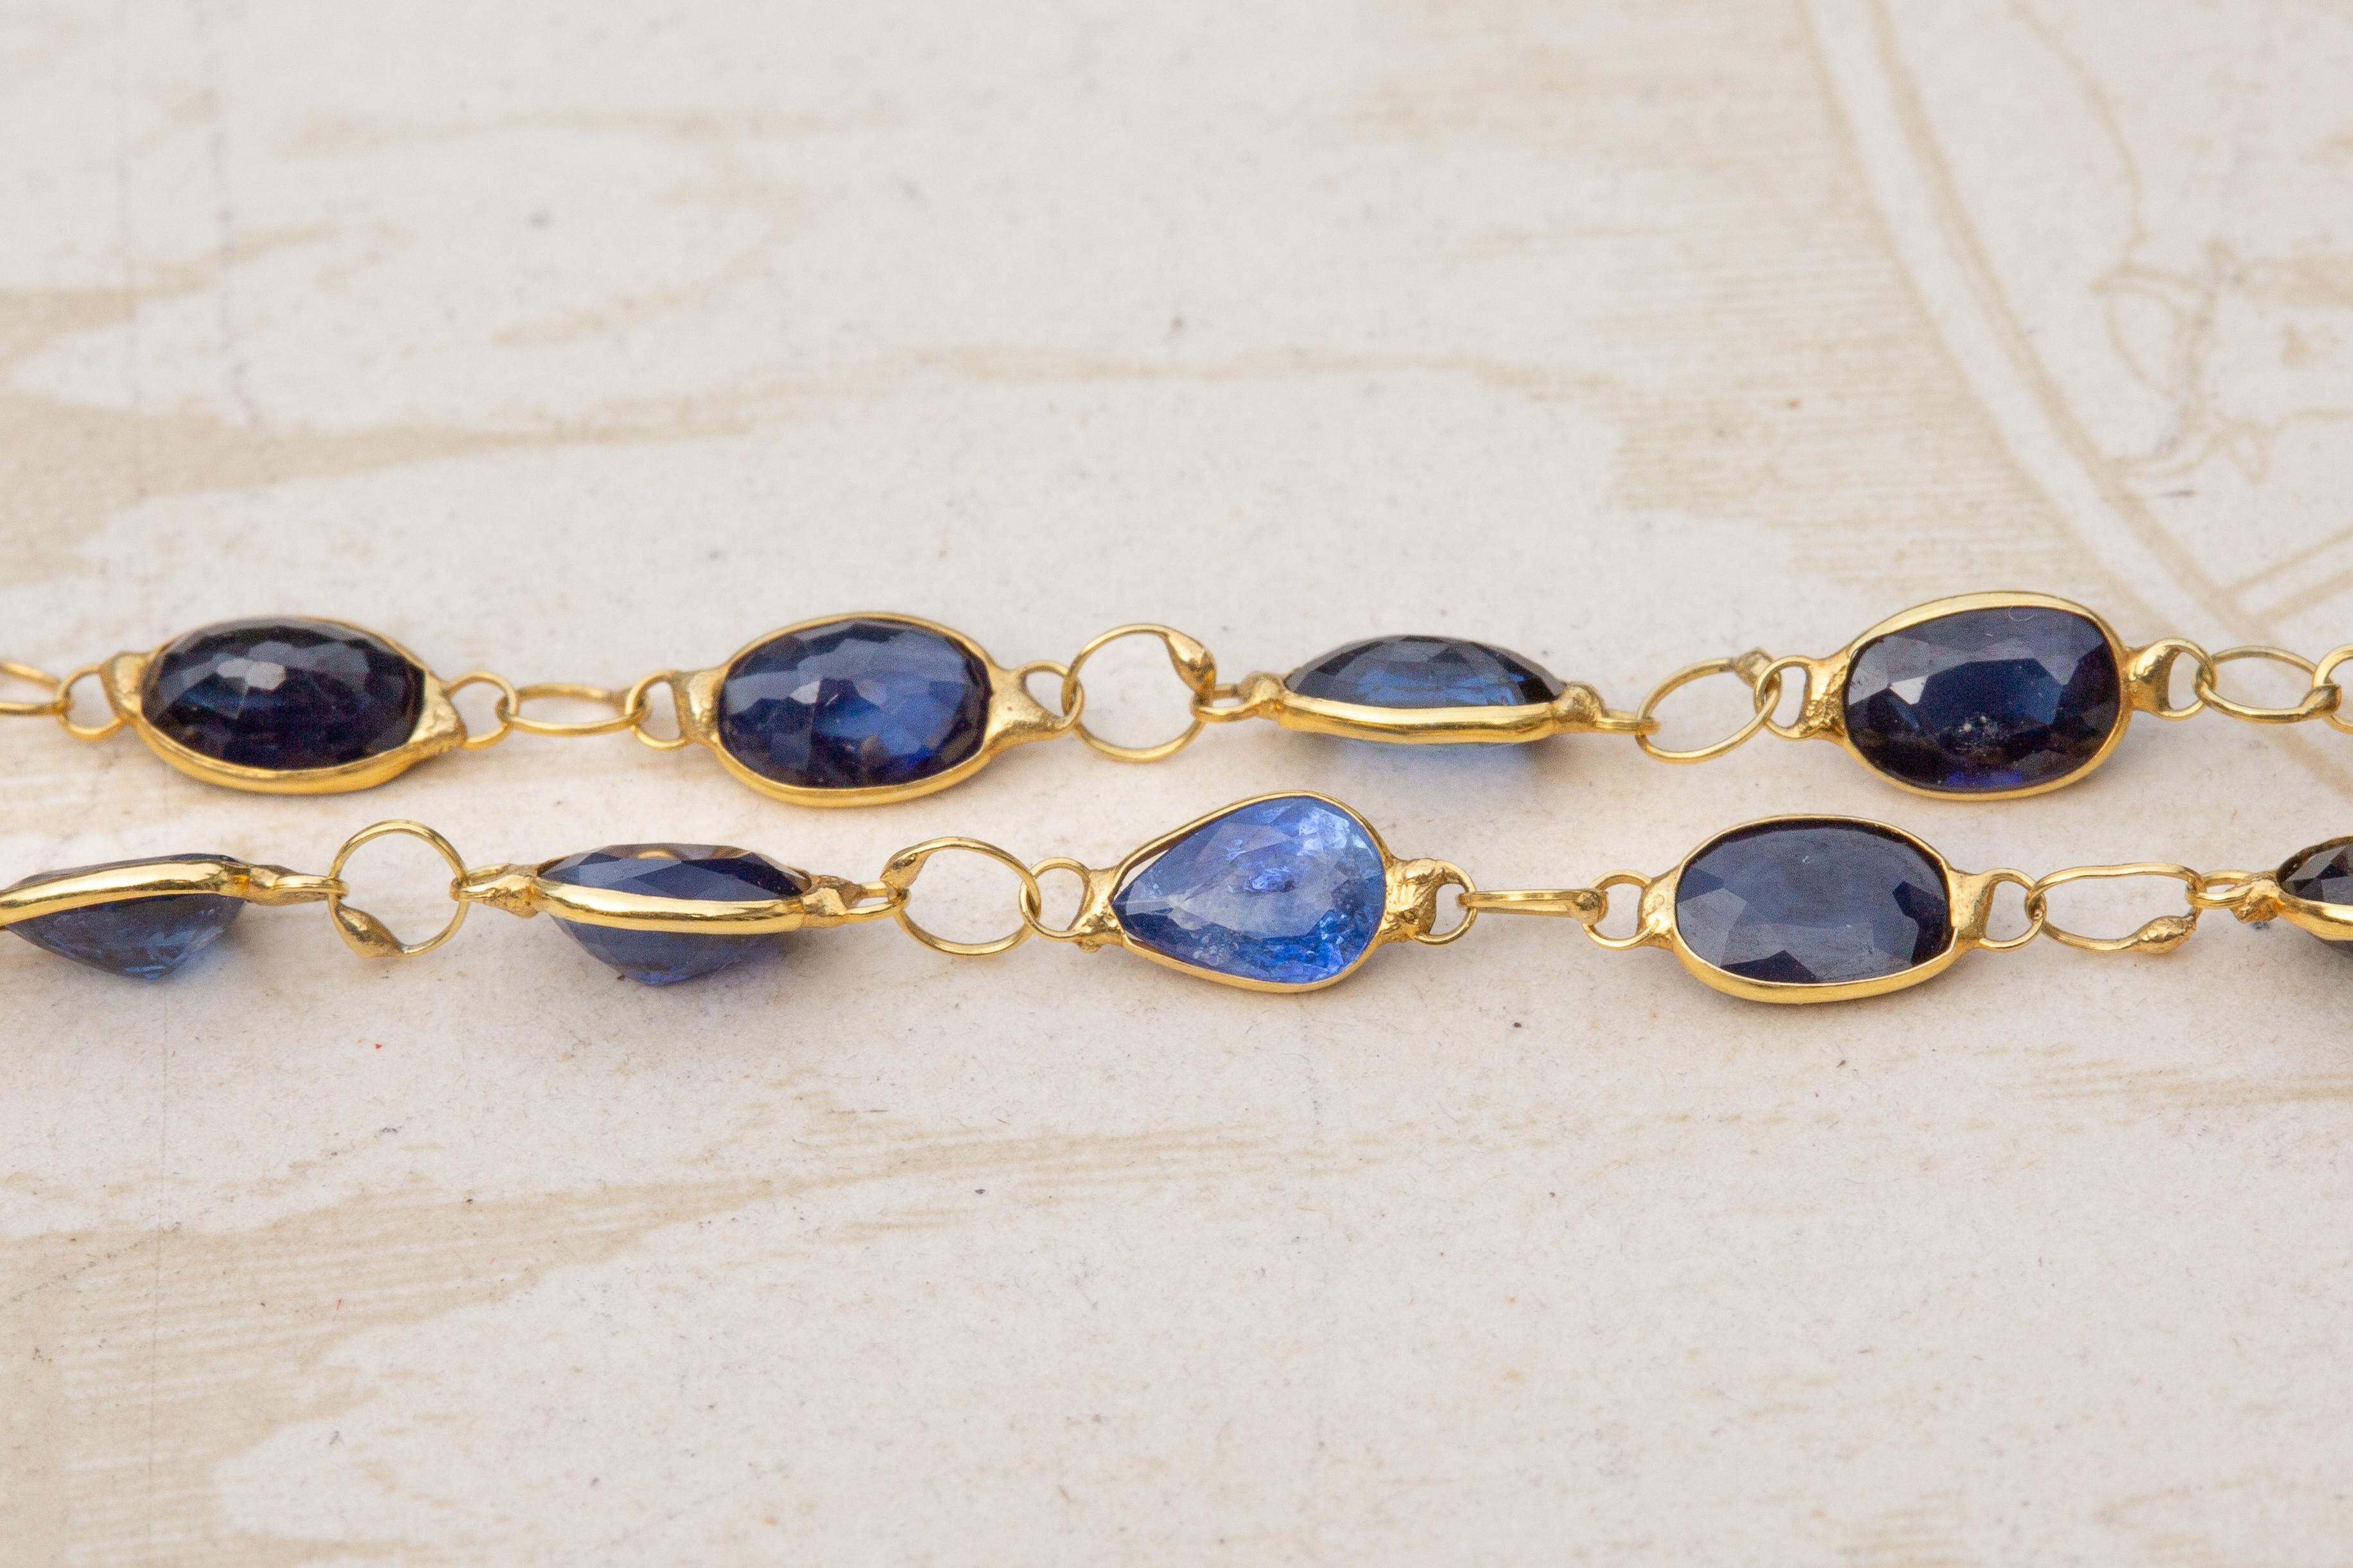 Eine fantastische einsträngige Saphir-Halskette im Vintage-Stil. Die ovalen Saphire im Mischschliff sind alle brillenförmig gefasst und durch ouroborosförmige Sprungringe verbunden. Der Ouroboros ist ein antikes Symbol für eine Schlange, die ihren